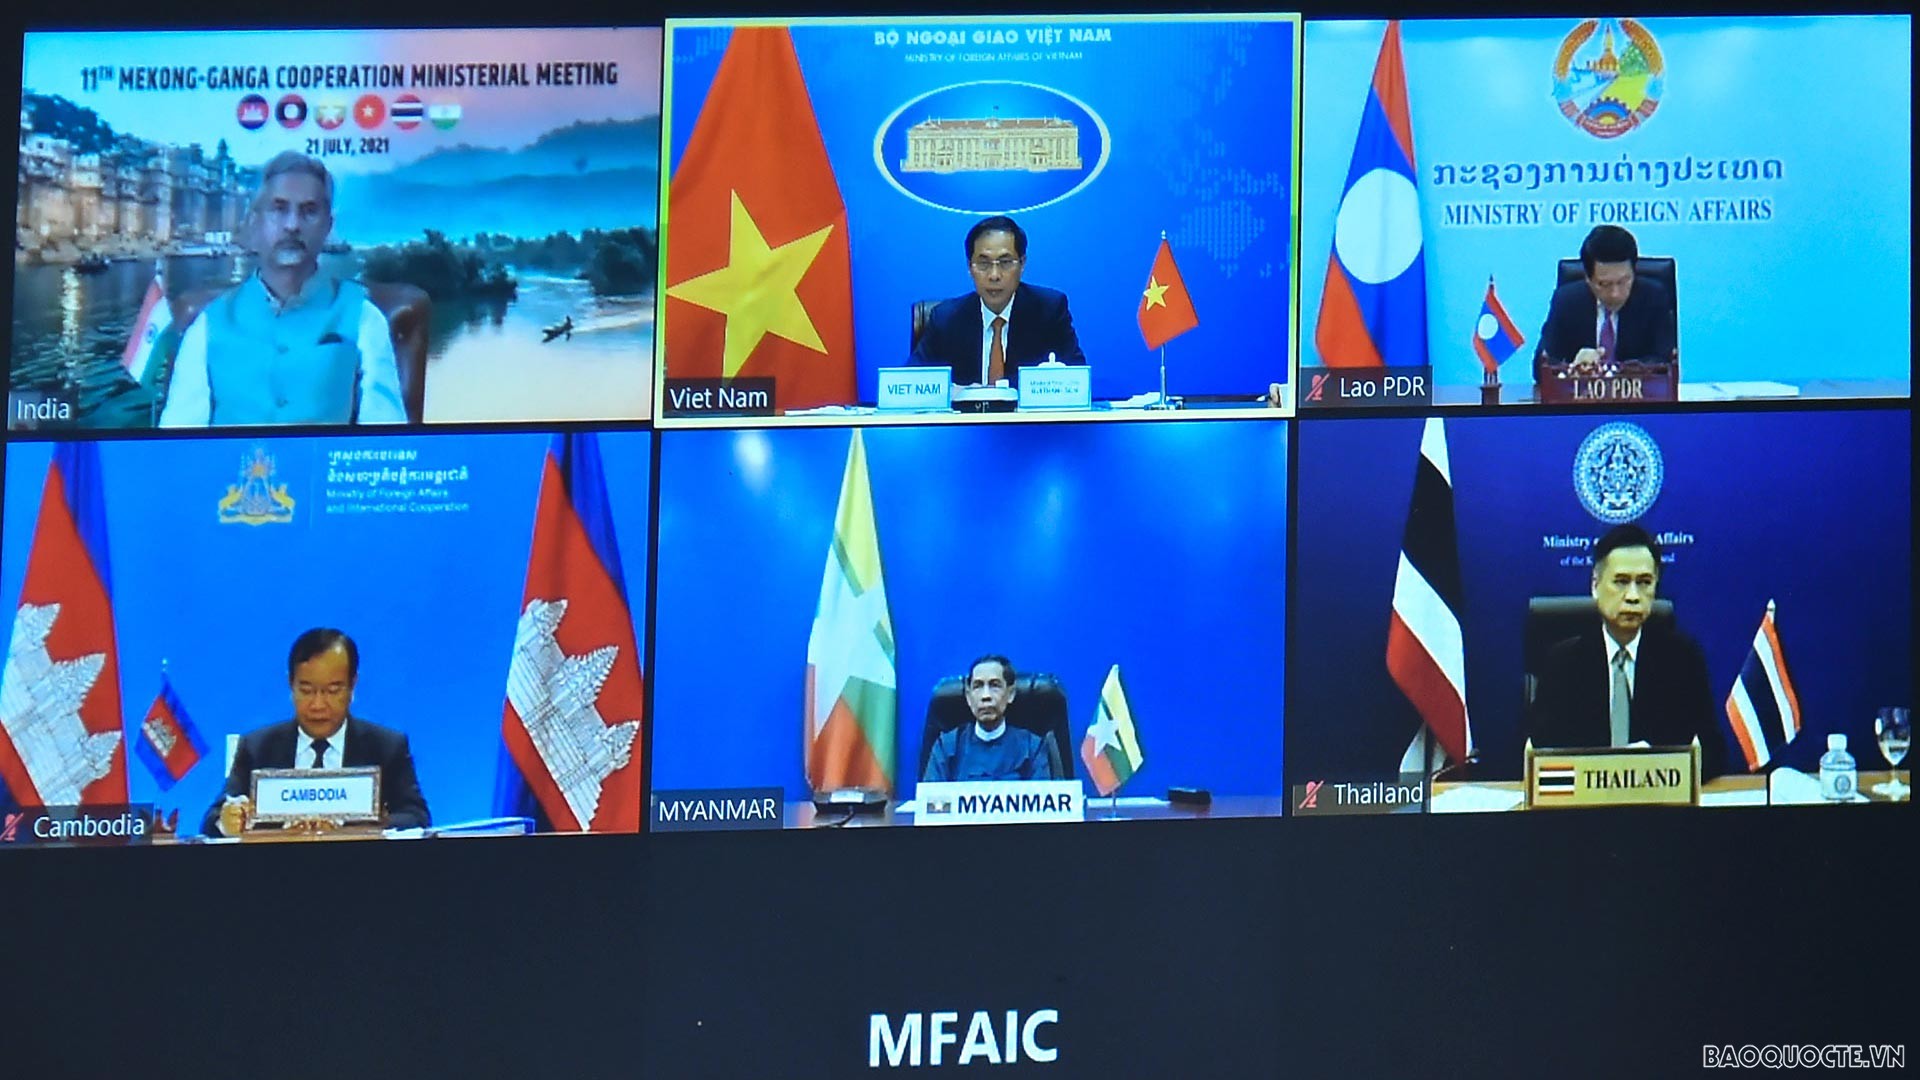 Bộ trưởng Ngoại giao Bùi Thanh Sơn đề xuất tăng cường hợp tác Mekong-sông Hằng